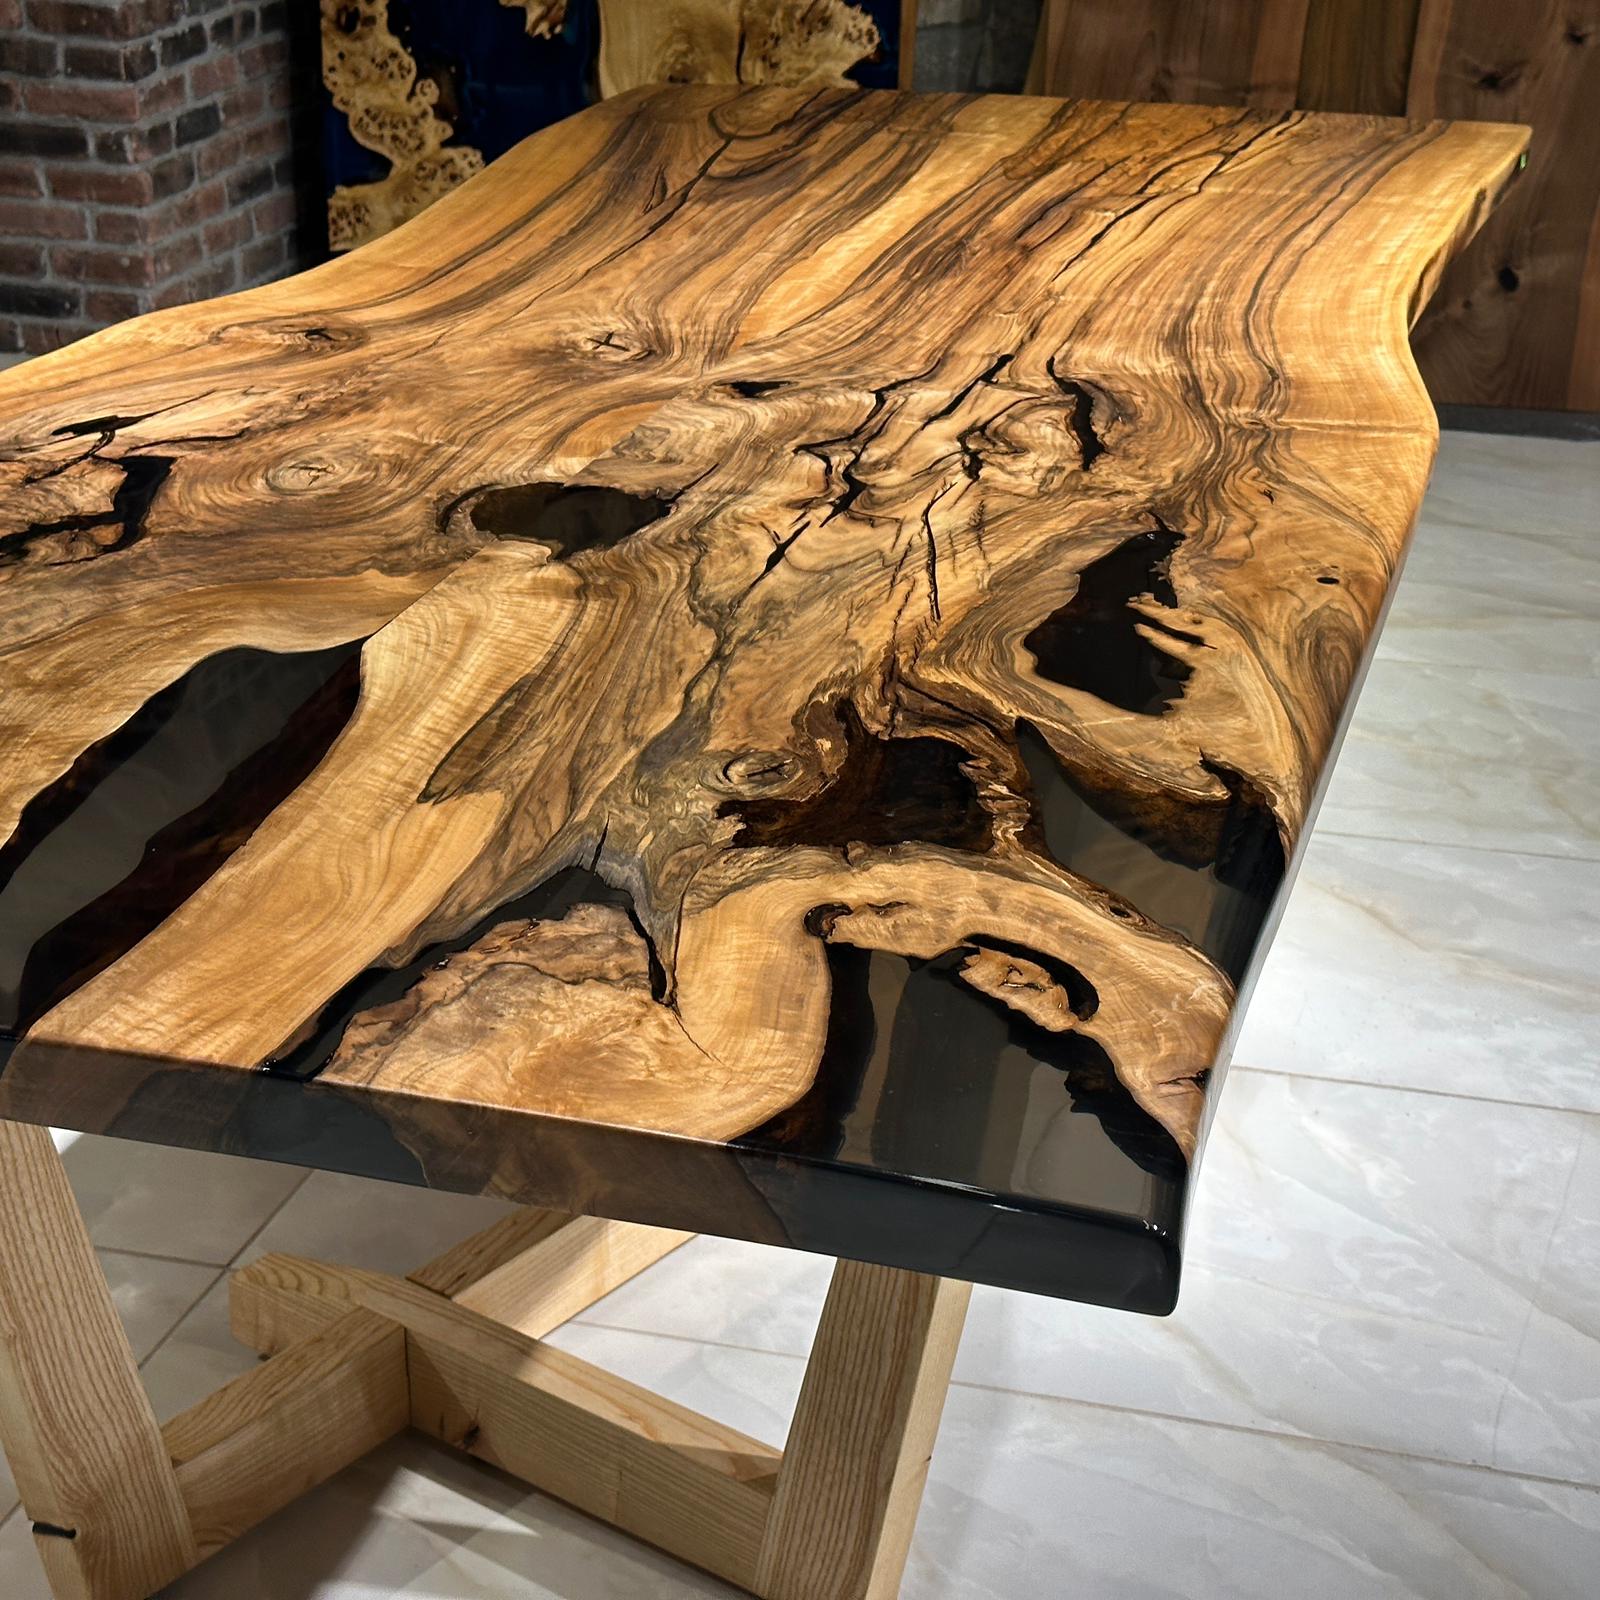 Black Epoxy Resin & Walnut Wood Slab Table